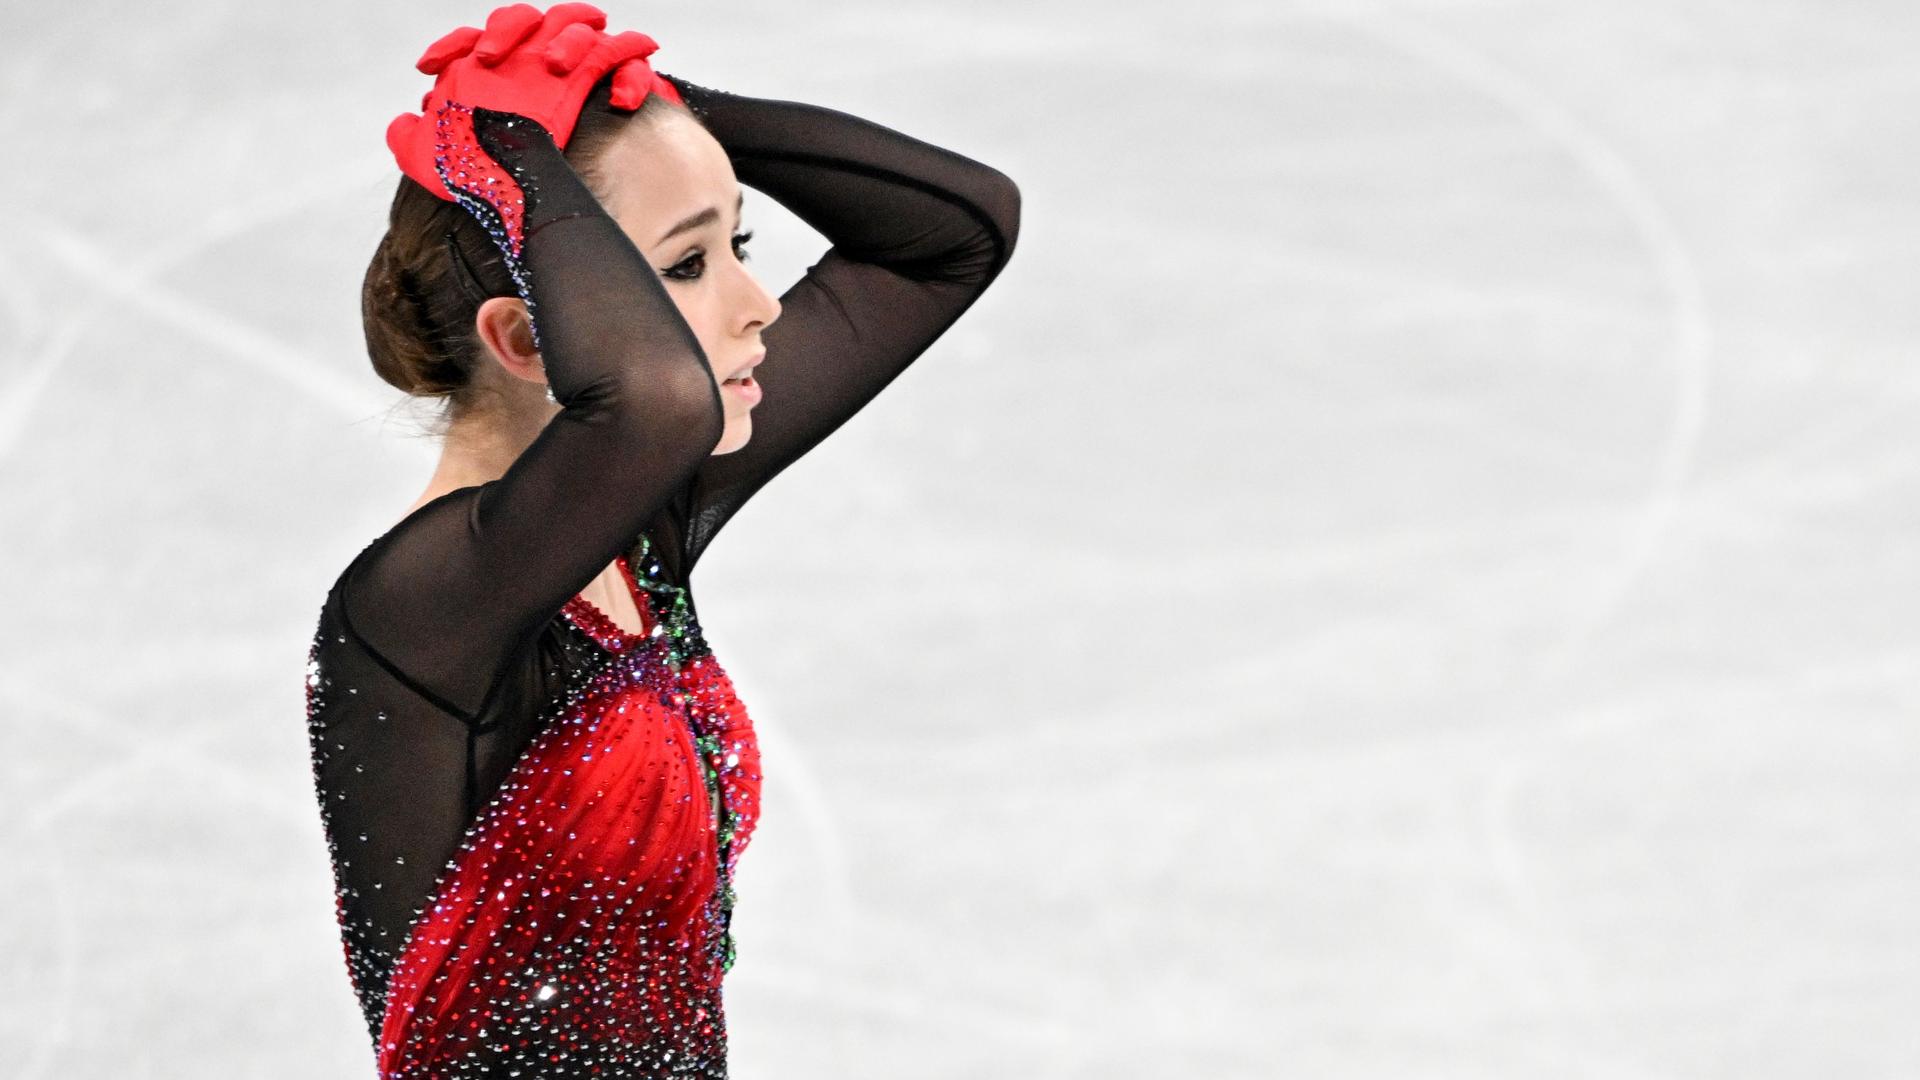 Kamila Walijewa vom Russischen Olympischen Komitee hält die Hände über den Kopf.